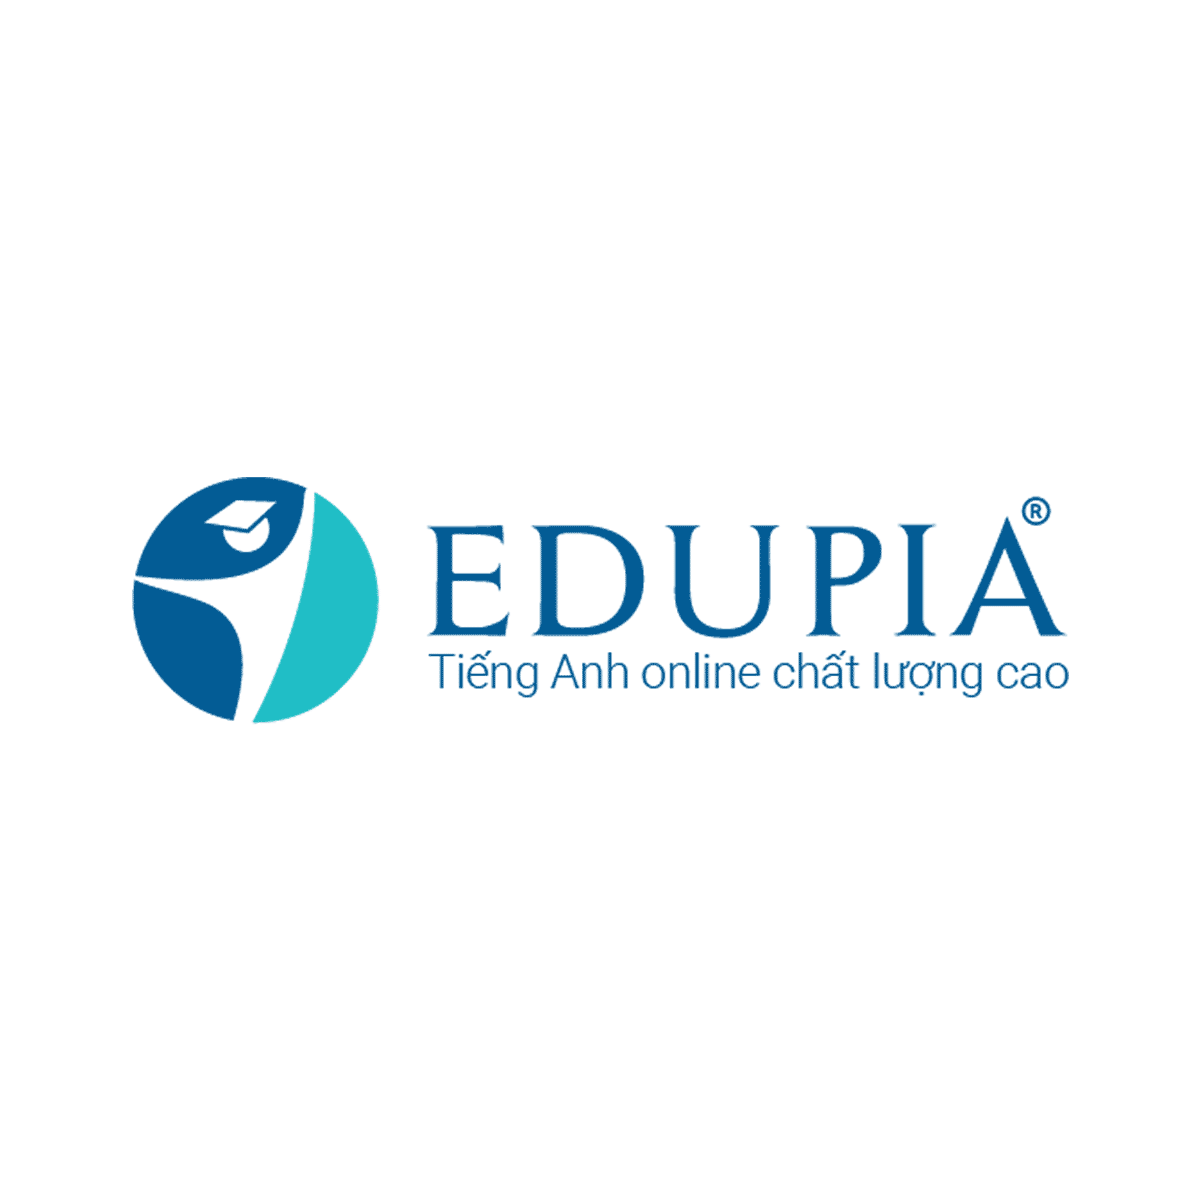 Cách sử dụng Website học Tiếng Anh online Edupia.vn hiệu ...